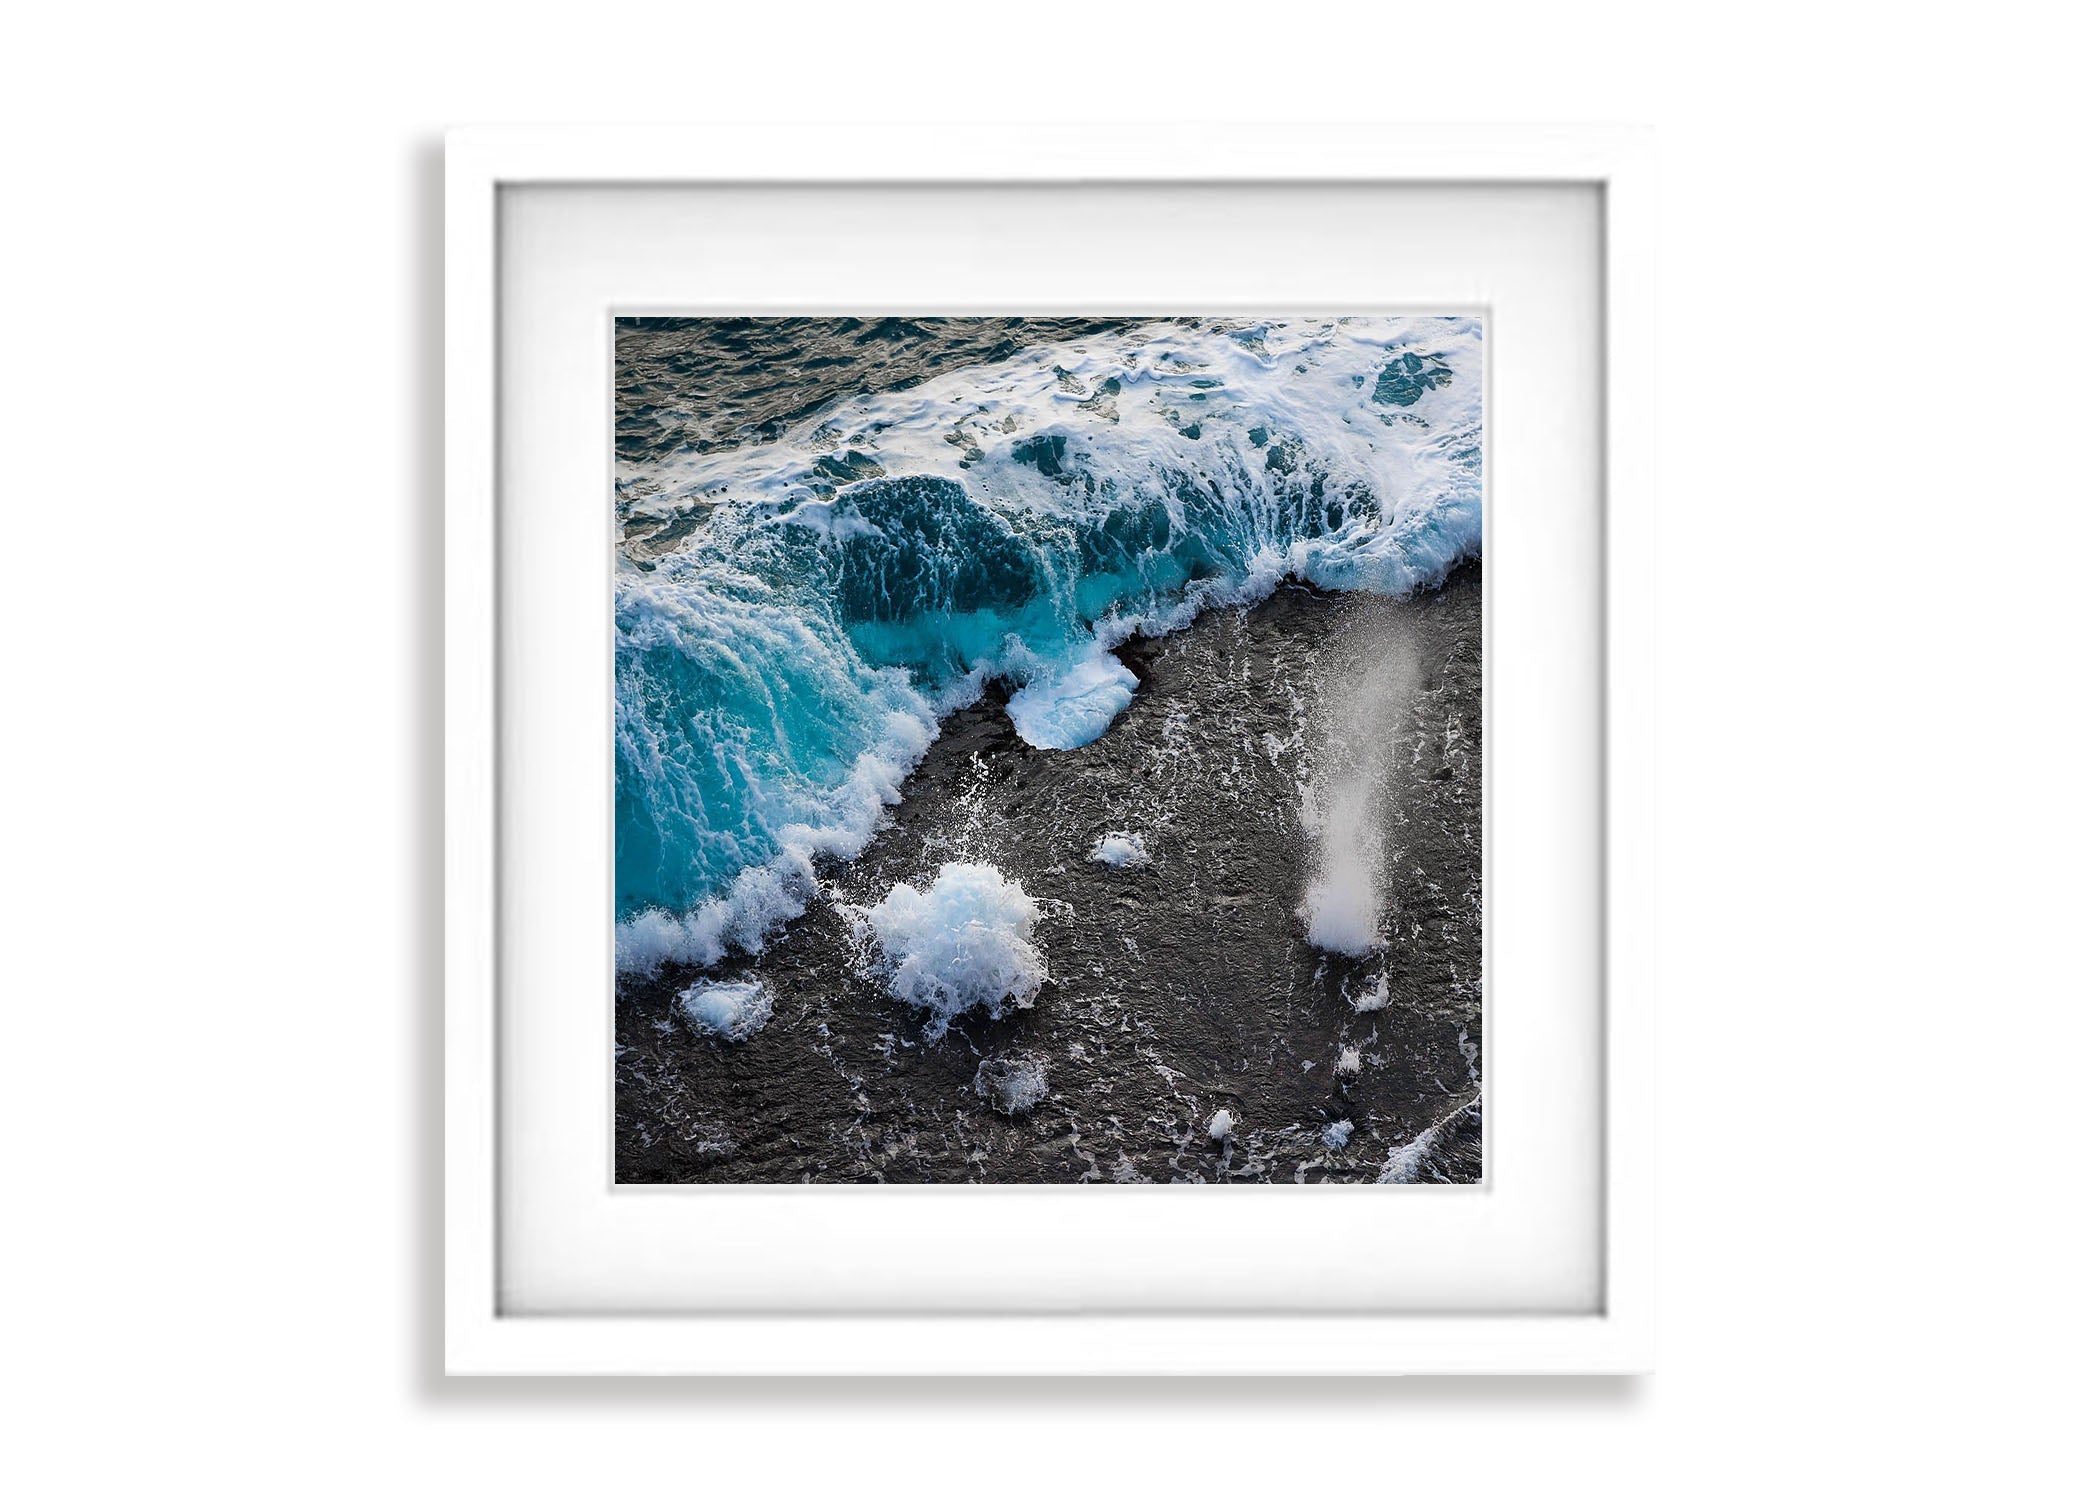 Bubbling Seas #2, Eyre Peninsula